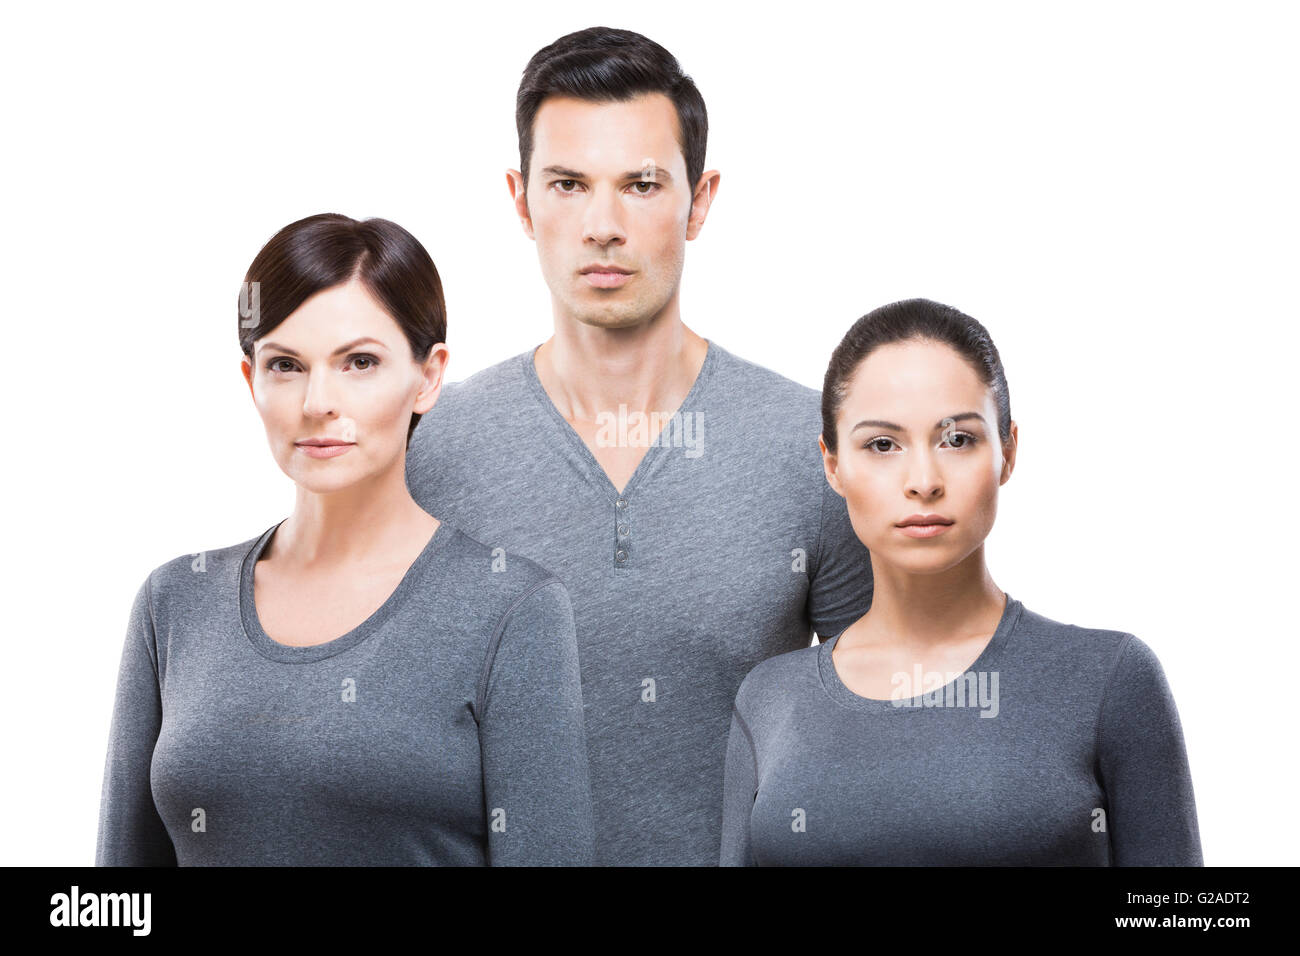 L'homme et de deux femmes portant tops gris Banque D'Images